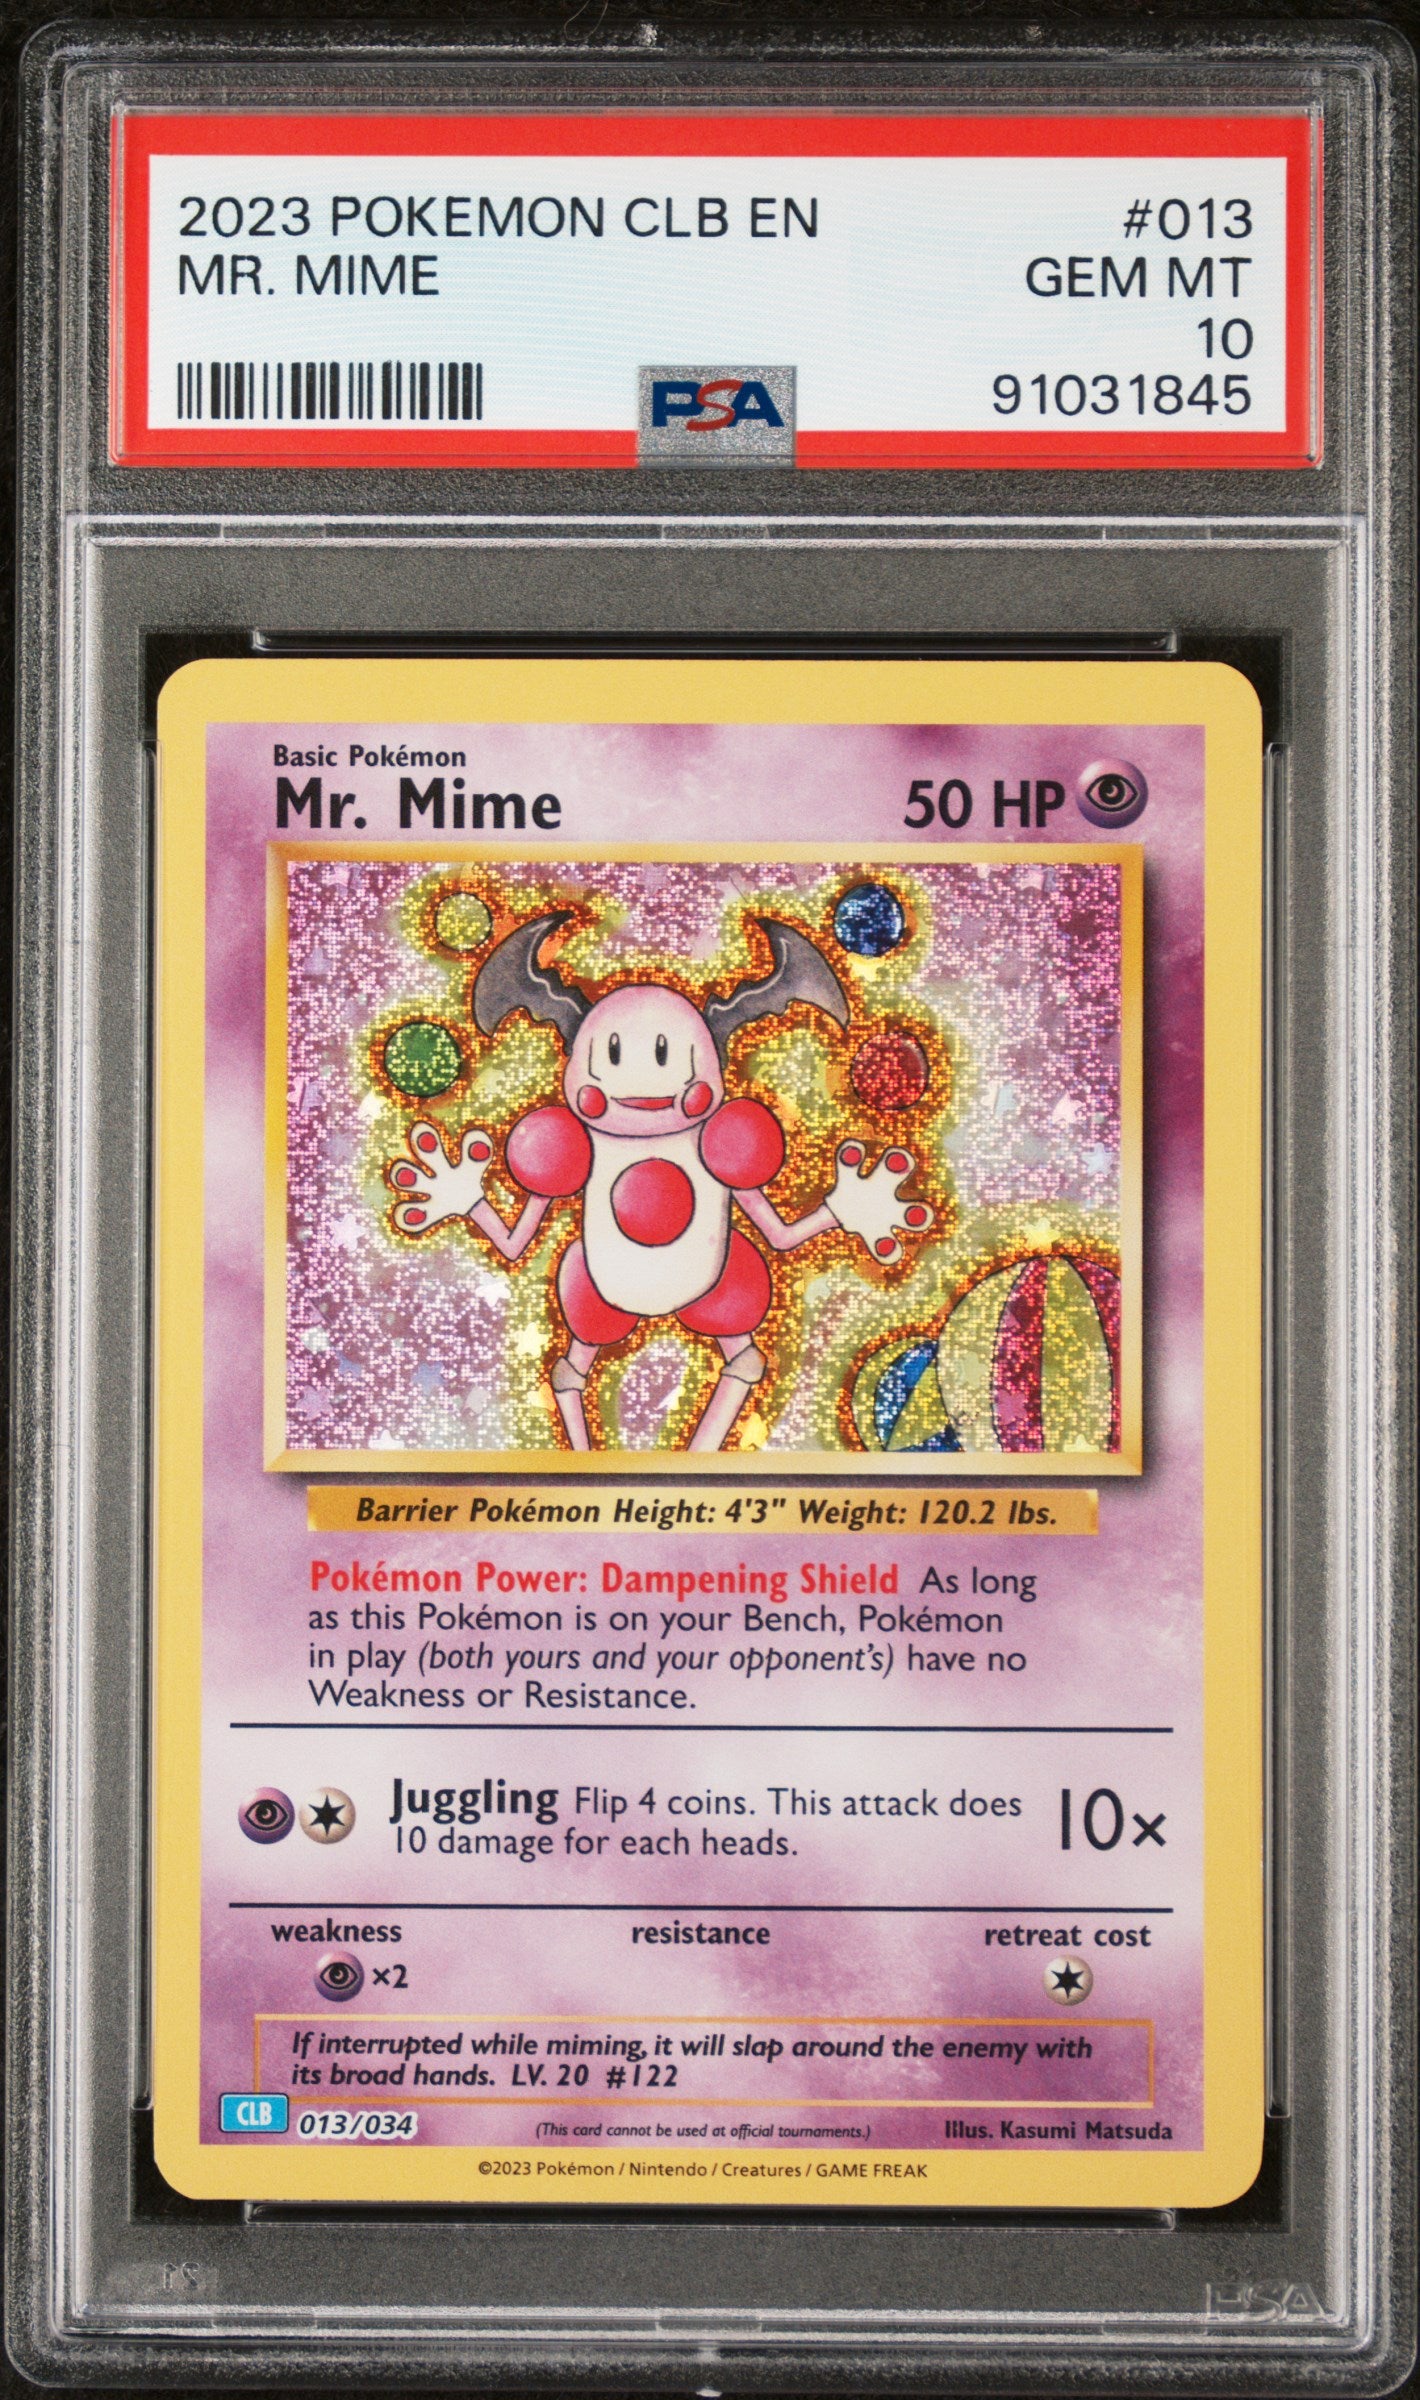 Pokémon - Mr. Mime CLB 013/034 (Classic - Blastoise and Suicune ex Deck)- PSA 10 (GEM-MINT)